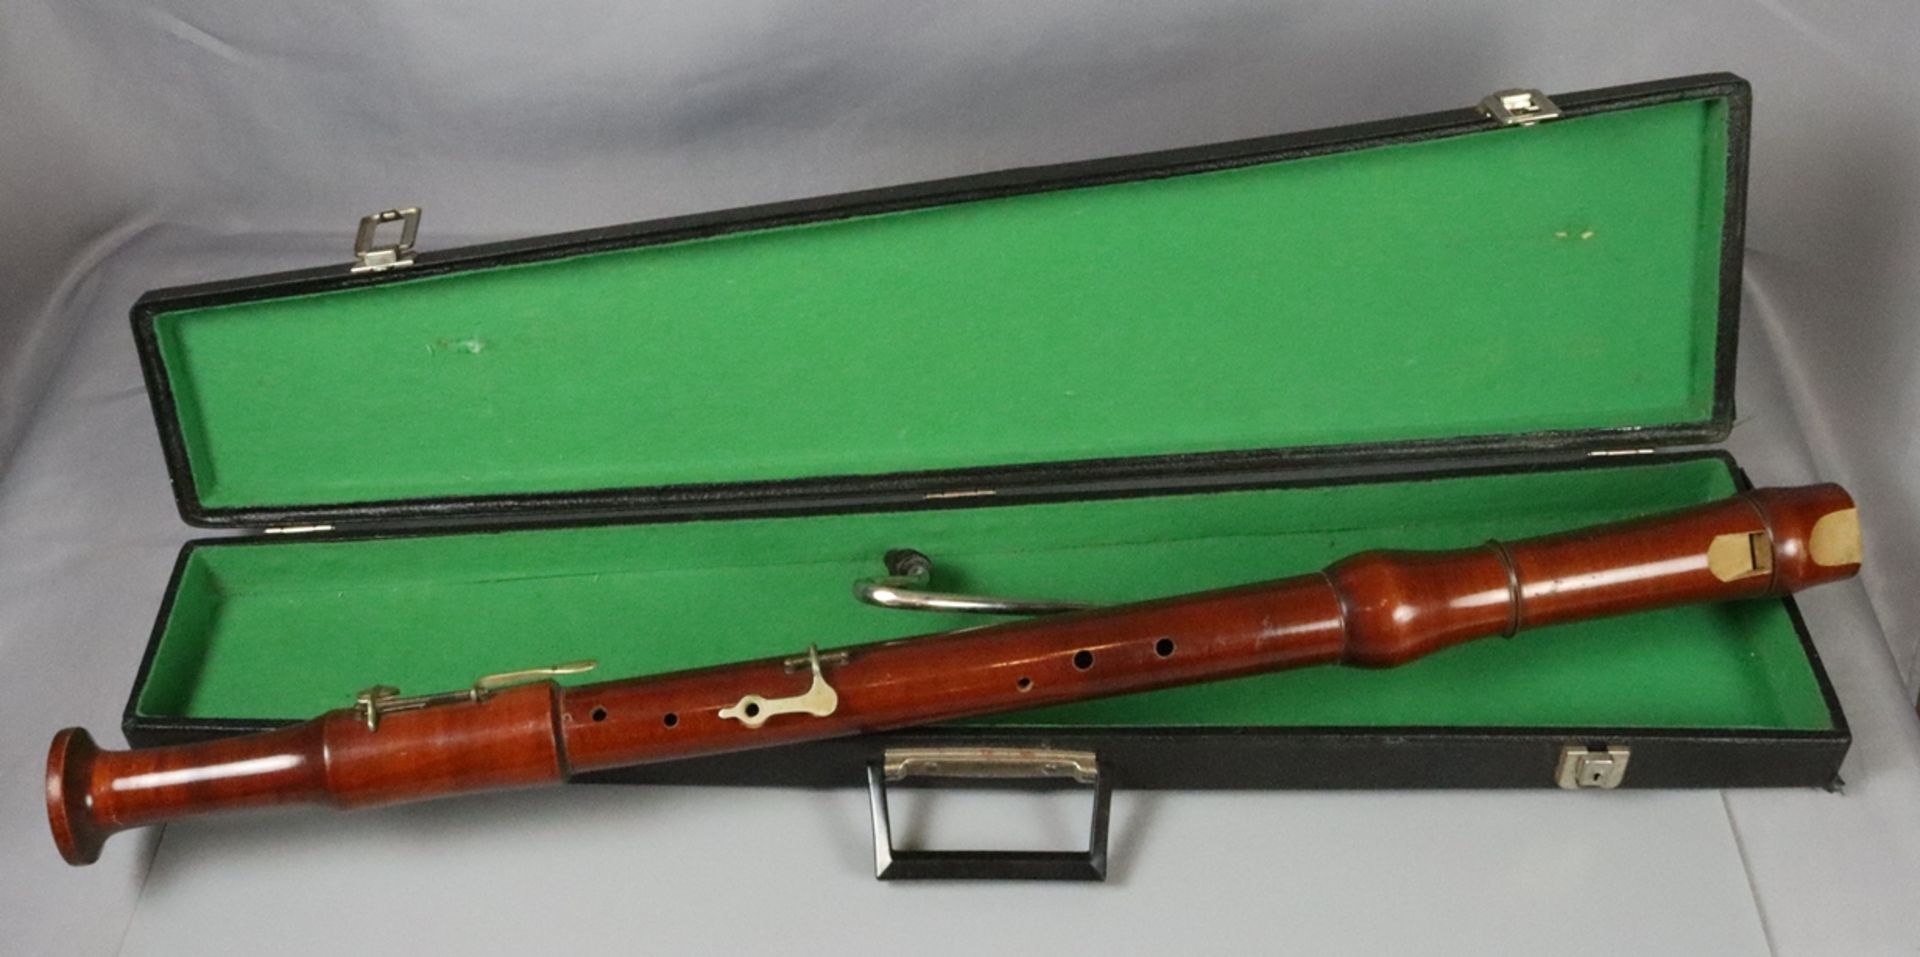 Oboe um 1920, Buche auf Nussbaum gebeizt, im Kasten, Funktion nicht geprüft